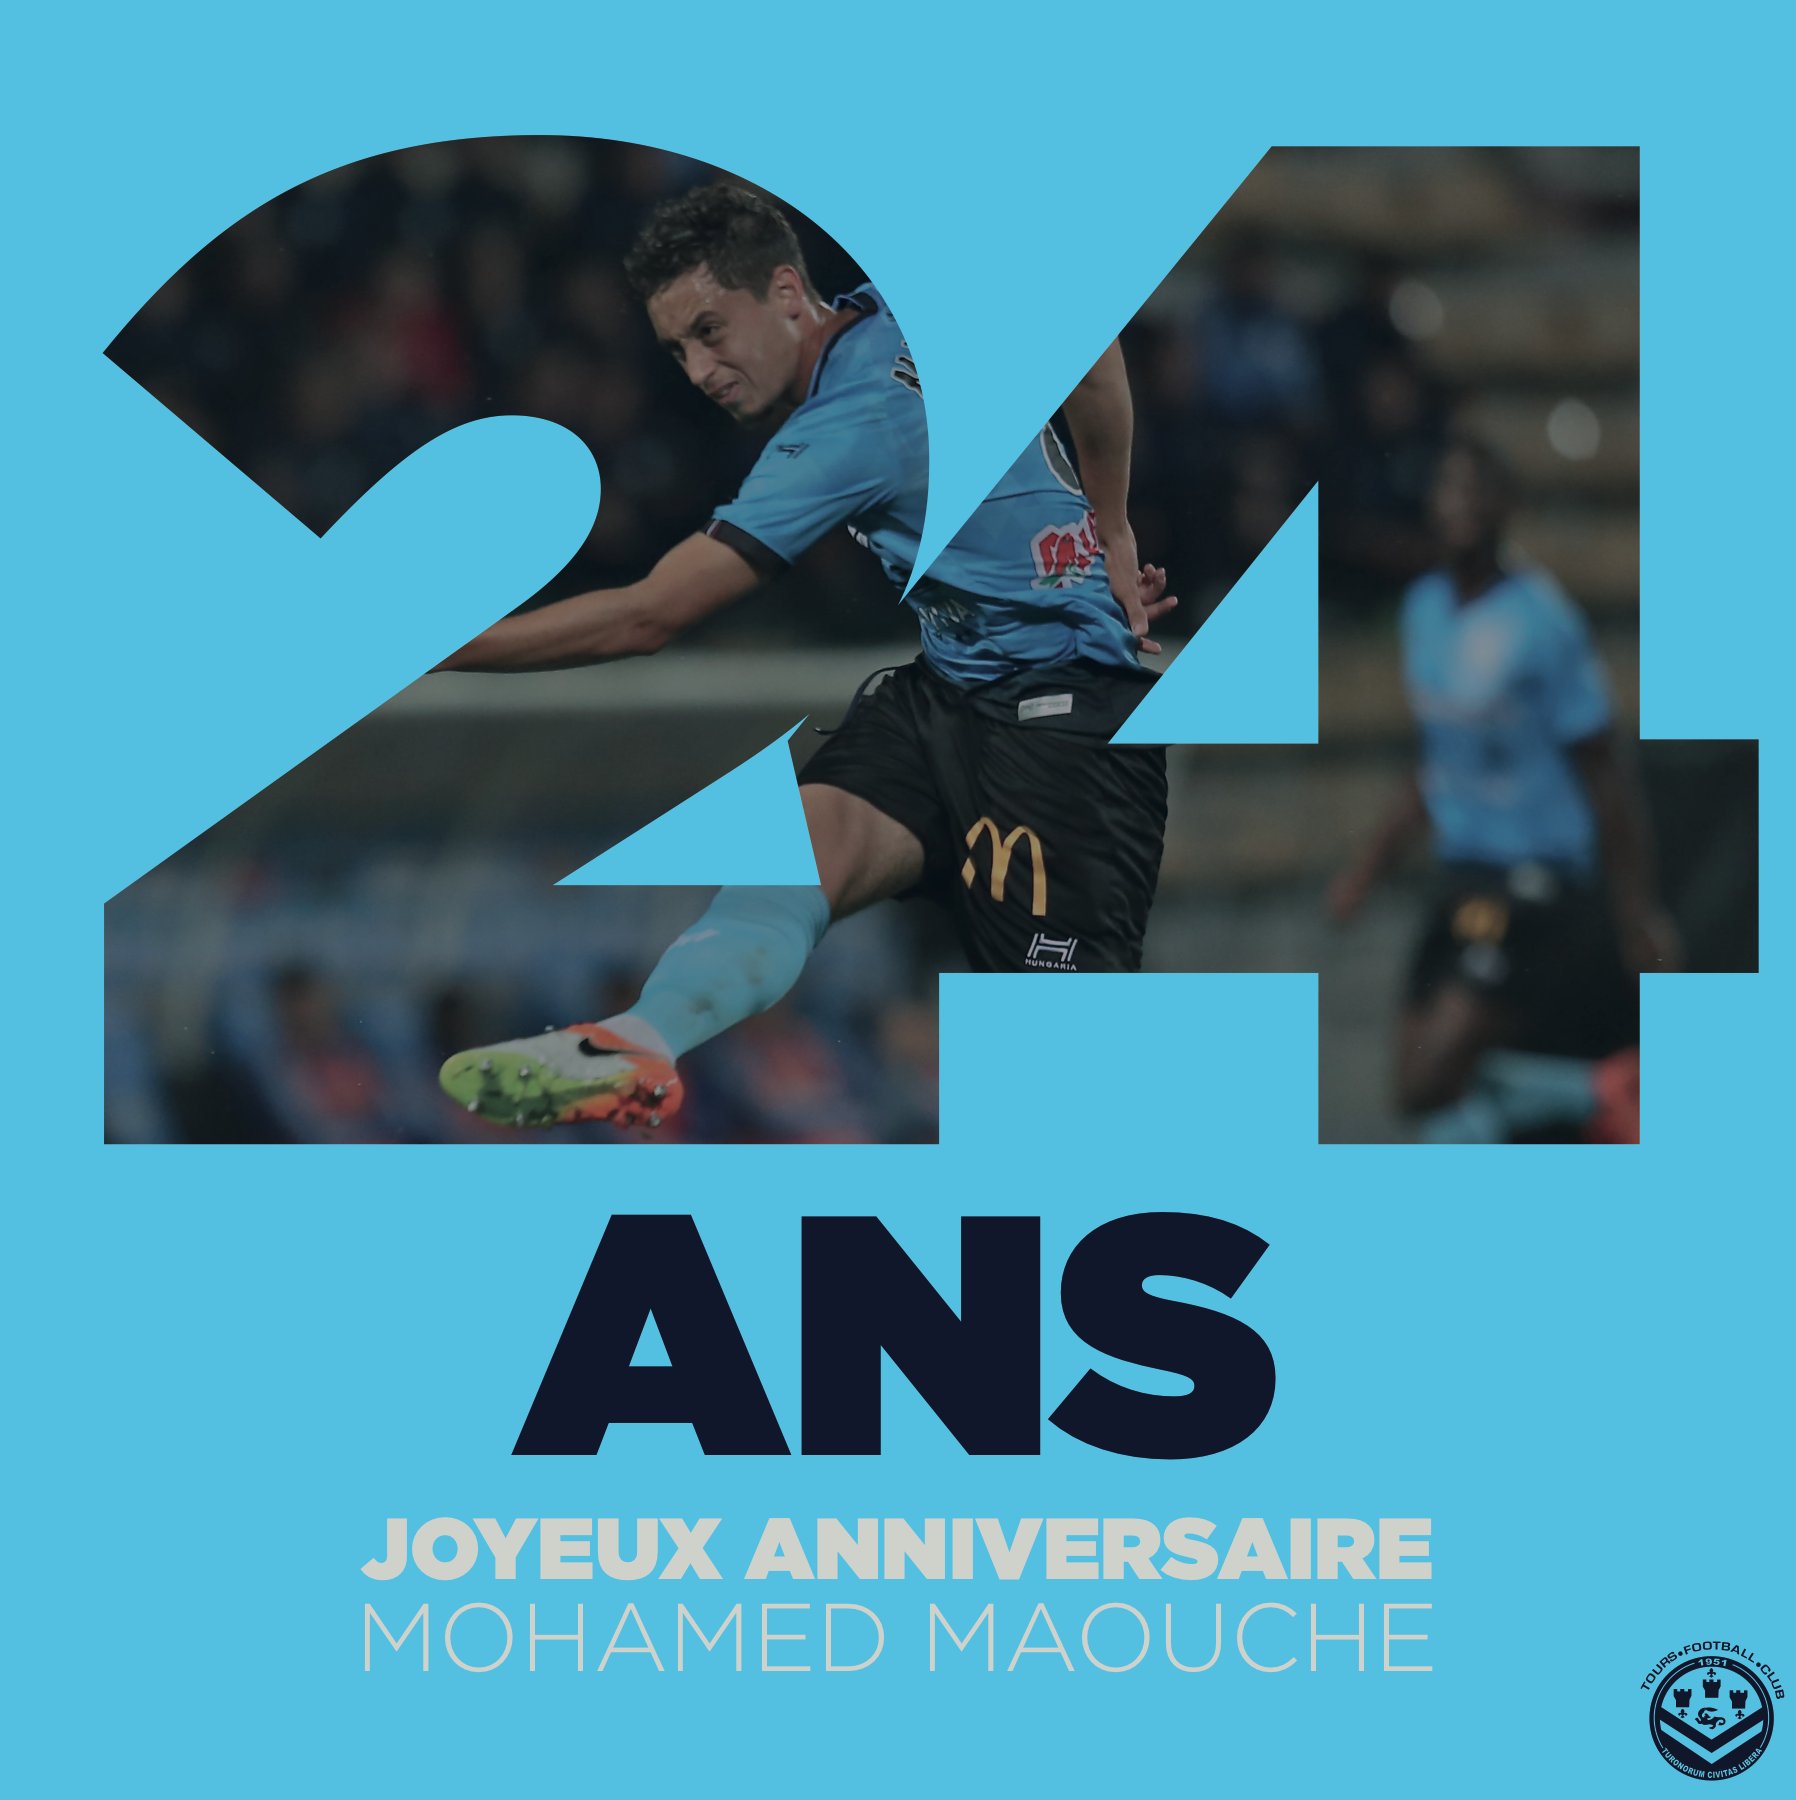 Tours Football Club Anniversaire Nous Souhaitons Un Joyeux Anniversaire A Mohamed Maouche Qui Fete Aujourd Hui Ses 24 Ans